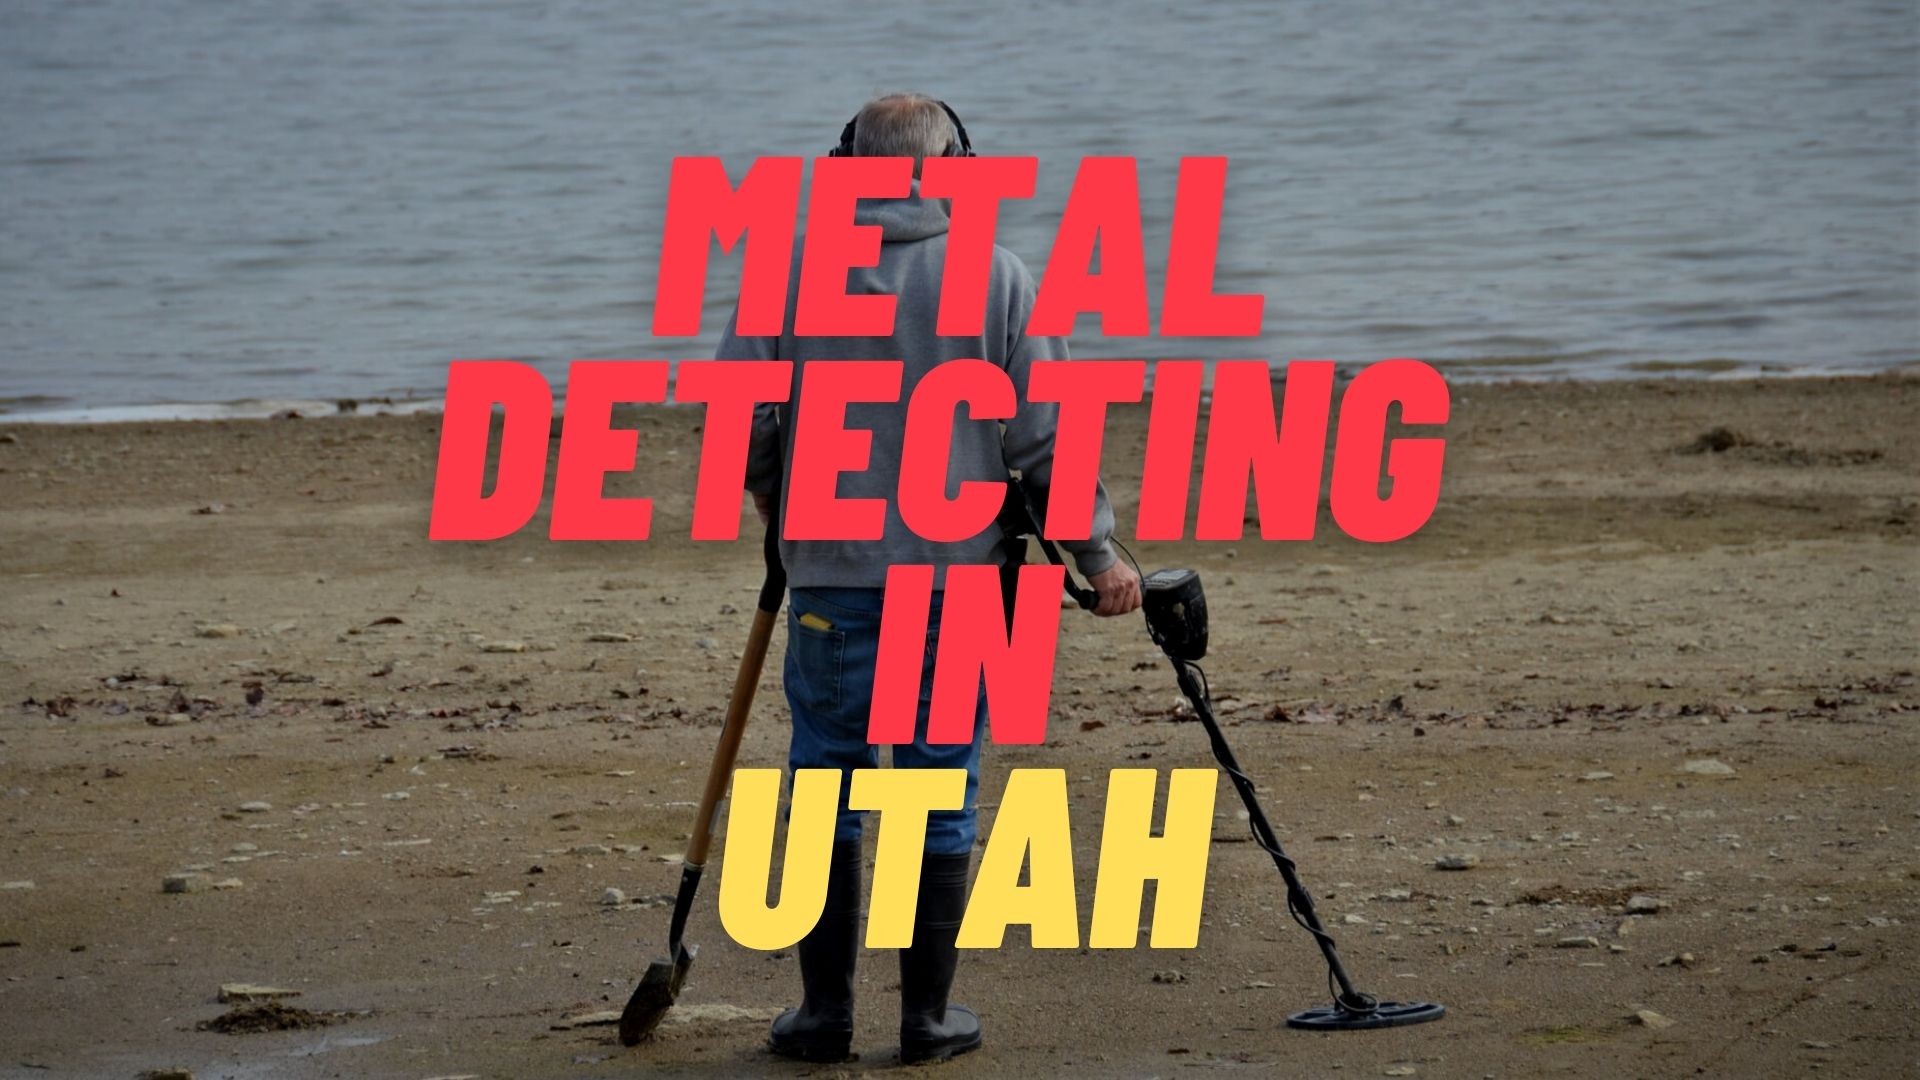 Metal Detecting in Utah